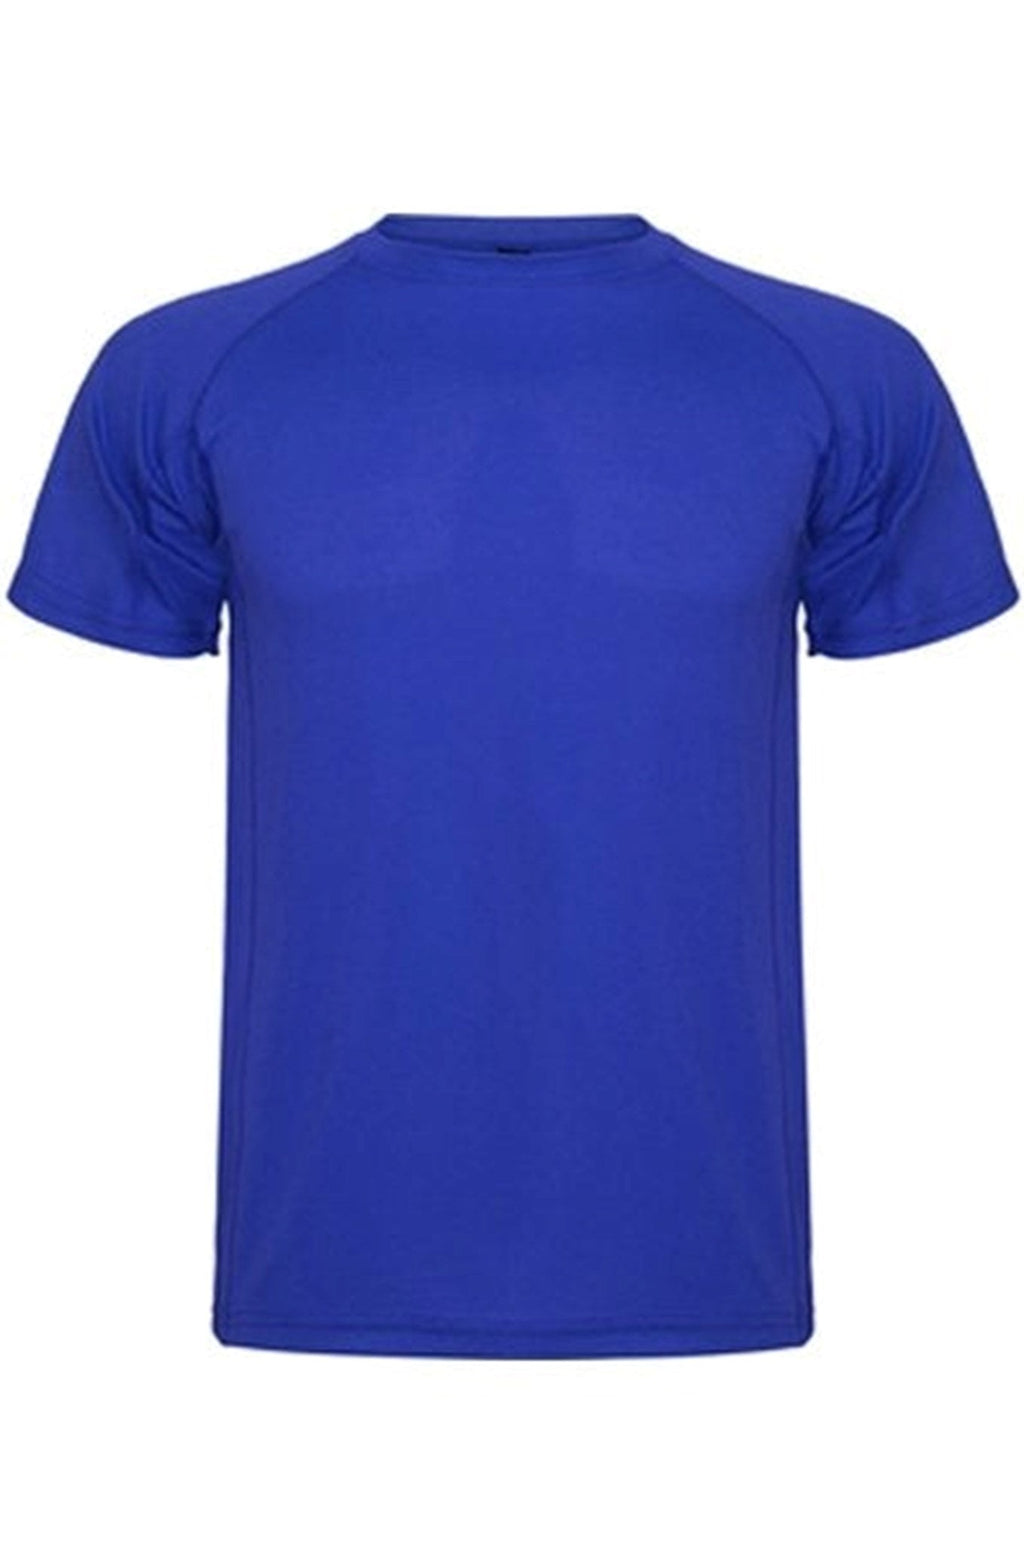 Camiseta de entrenamiento - Azul